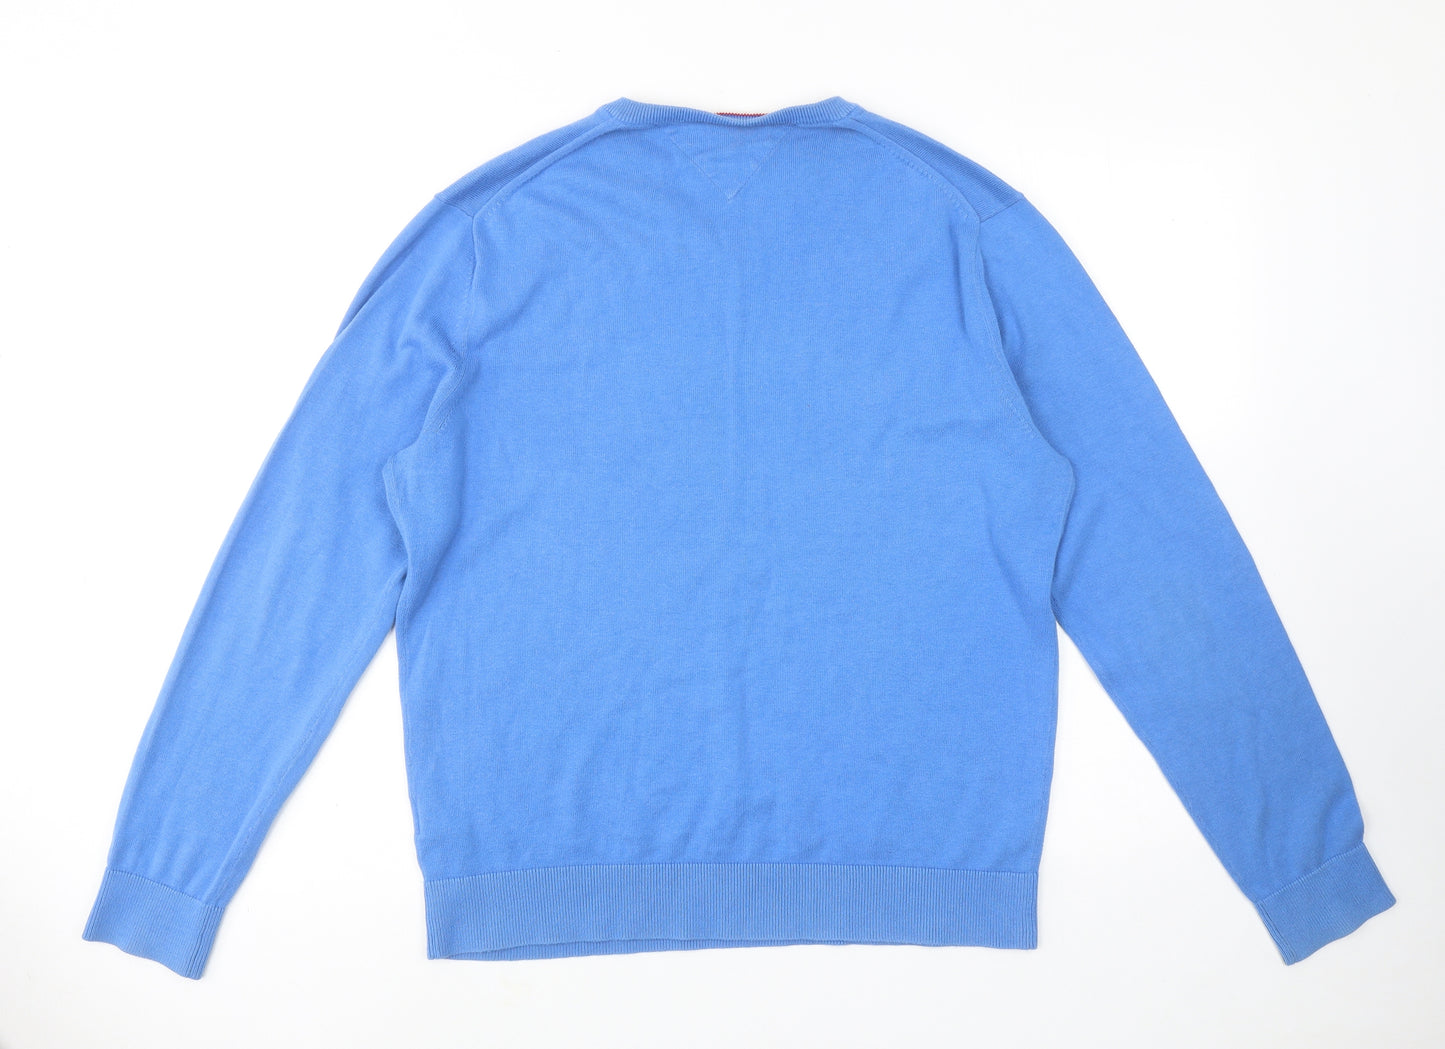 Tommy Hilfiger Mens Blue V-Neck Cotton Pullover Jumper Size XL Long Sleeve